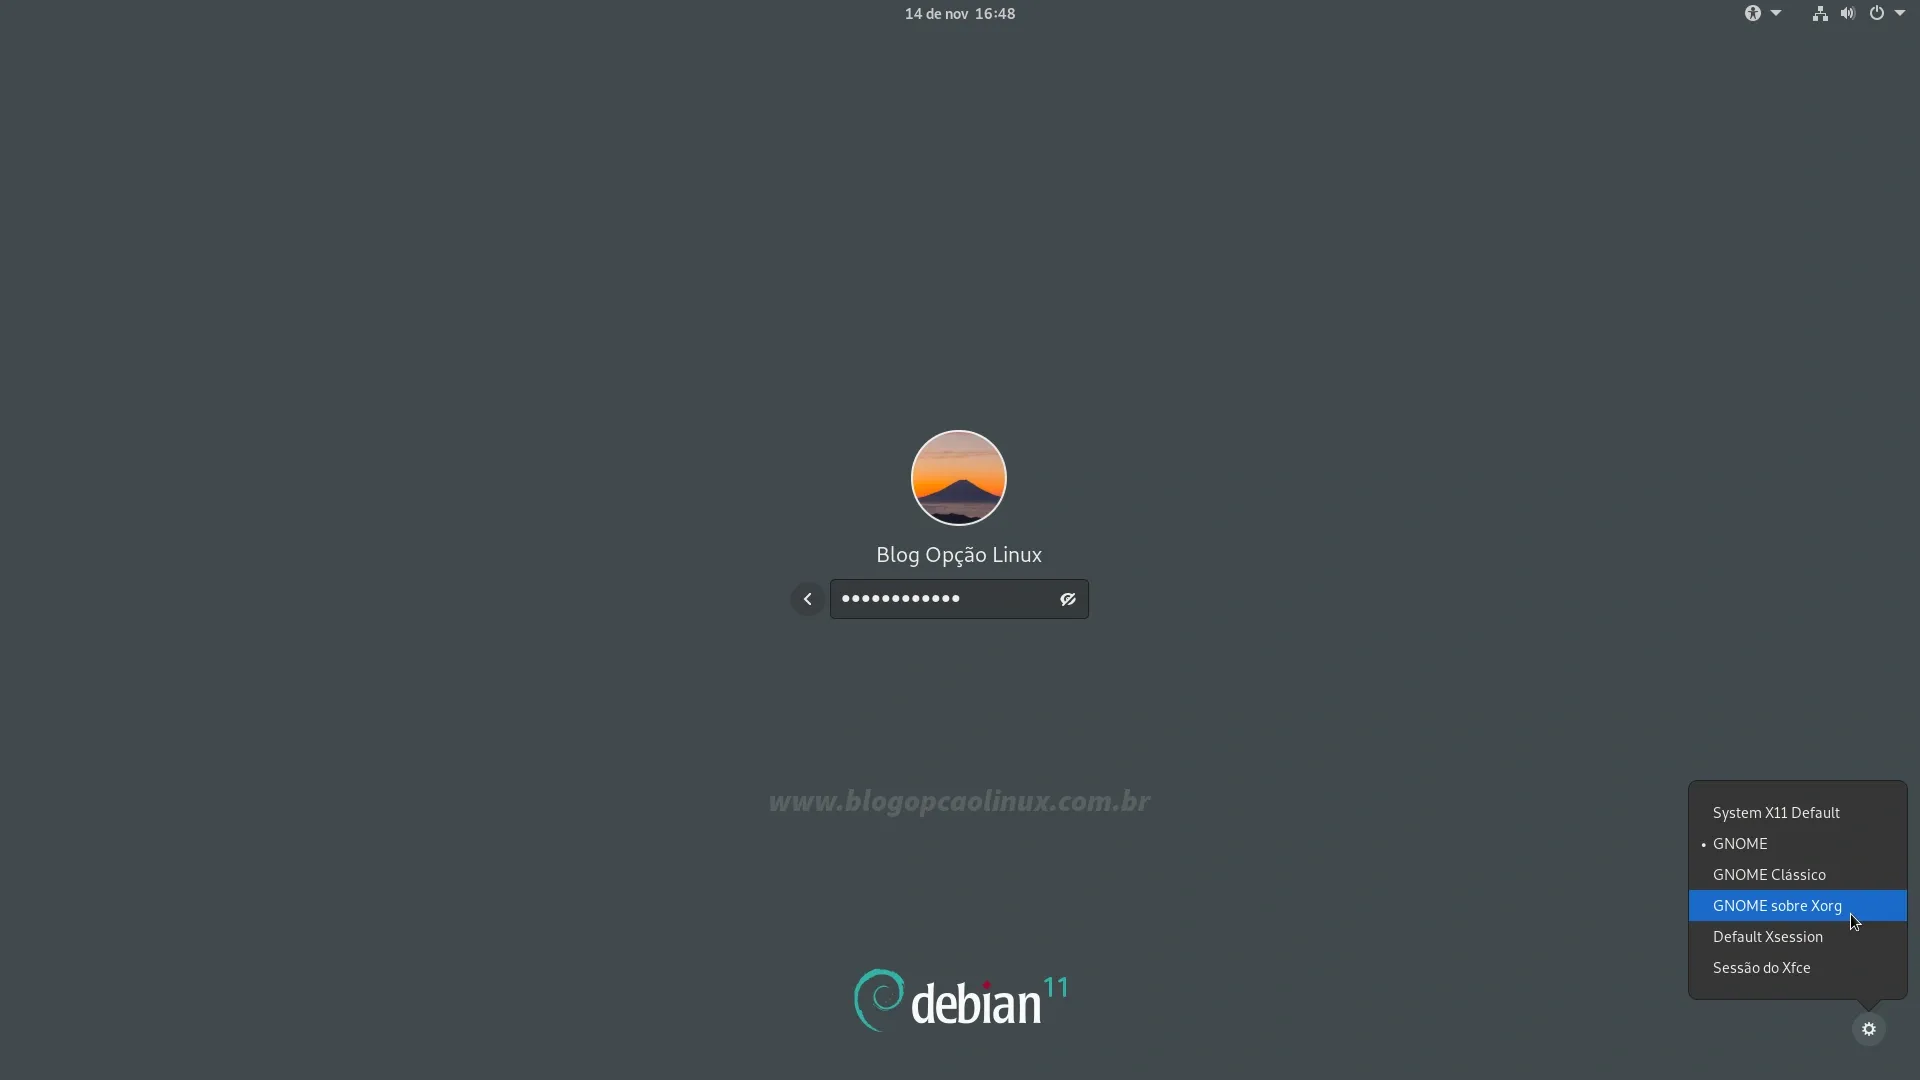 Selecione a opção 'GNOME sobre Xorg' na tela de login